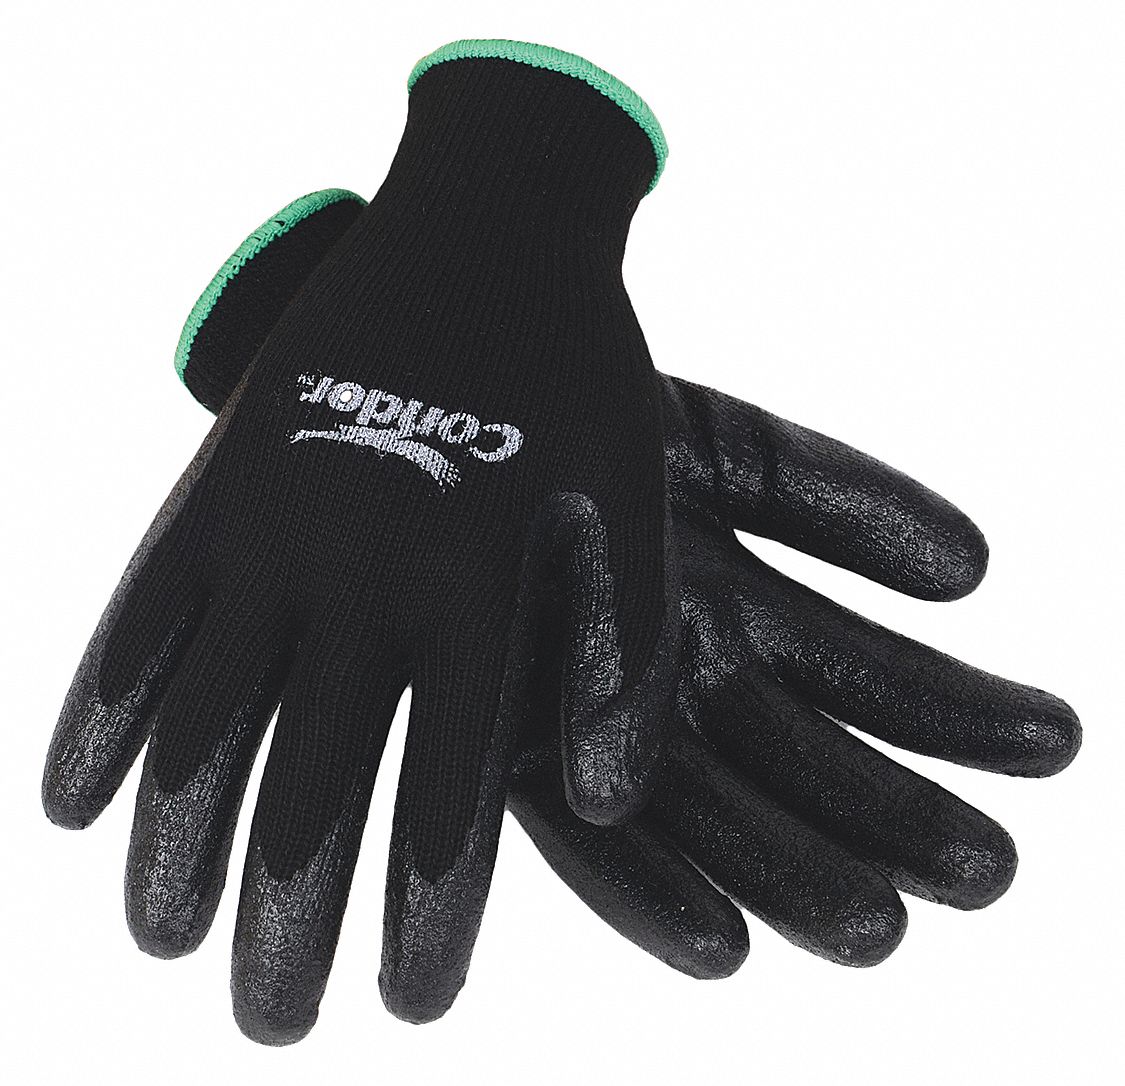 CONDOR Coated Gloves, Polyester, S, PR - 19L525|19L525 - Grainger